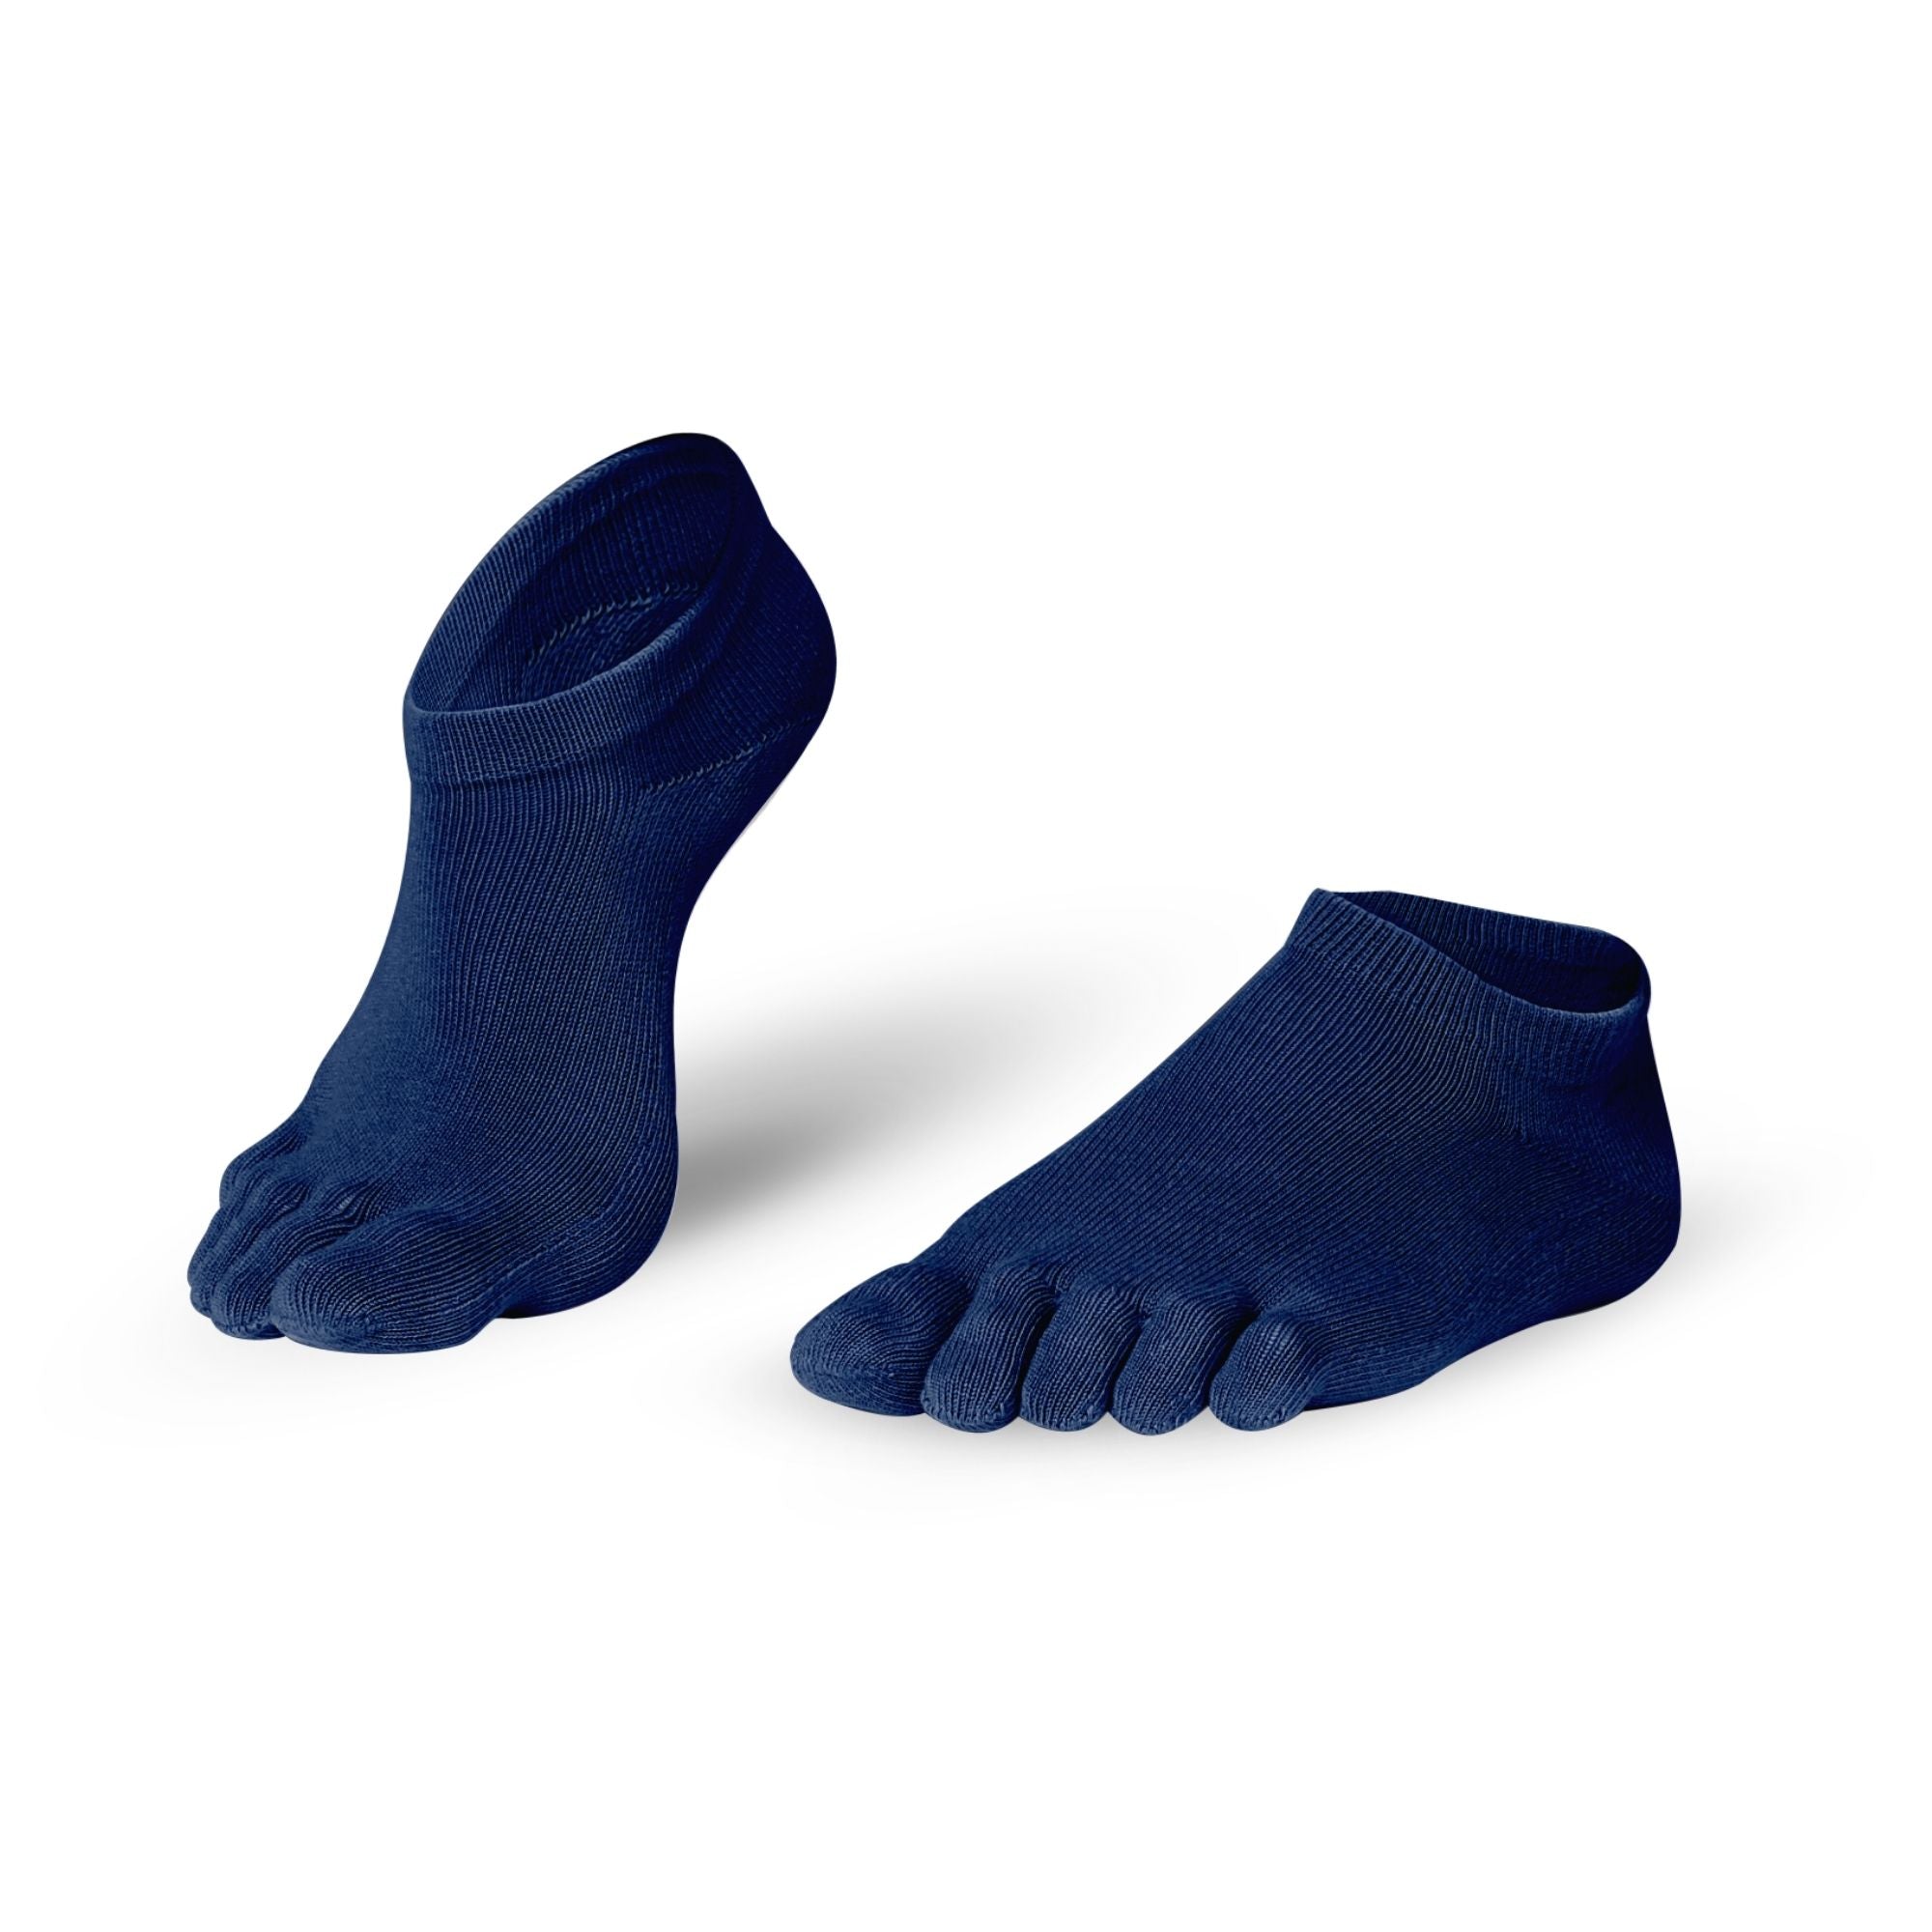 Knitido Everyday Essentials Sneaker chaussettes à orteils en coton pour le quotidien dans de nombreuses couleurs